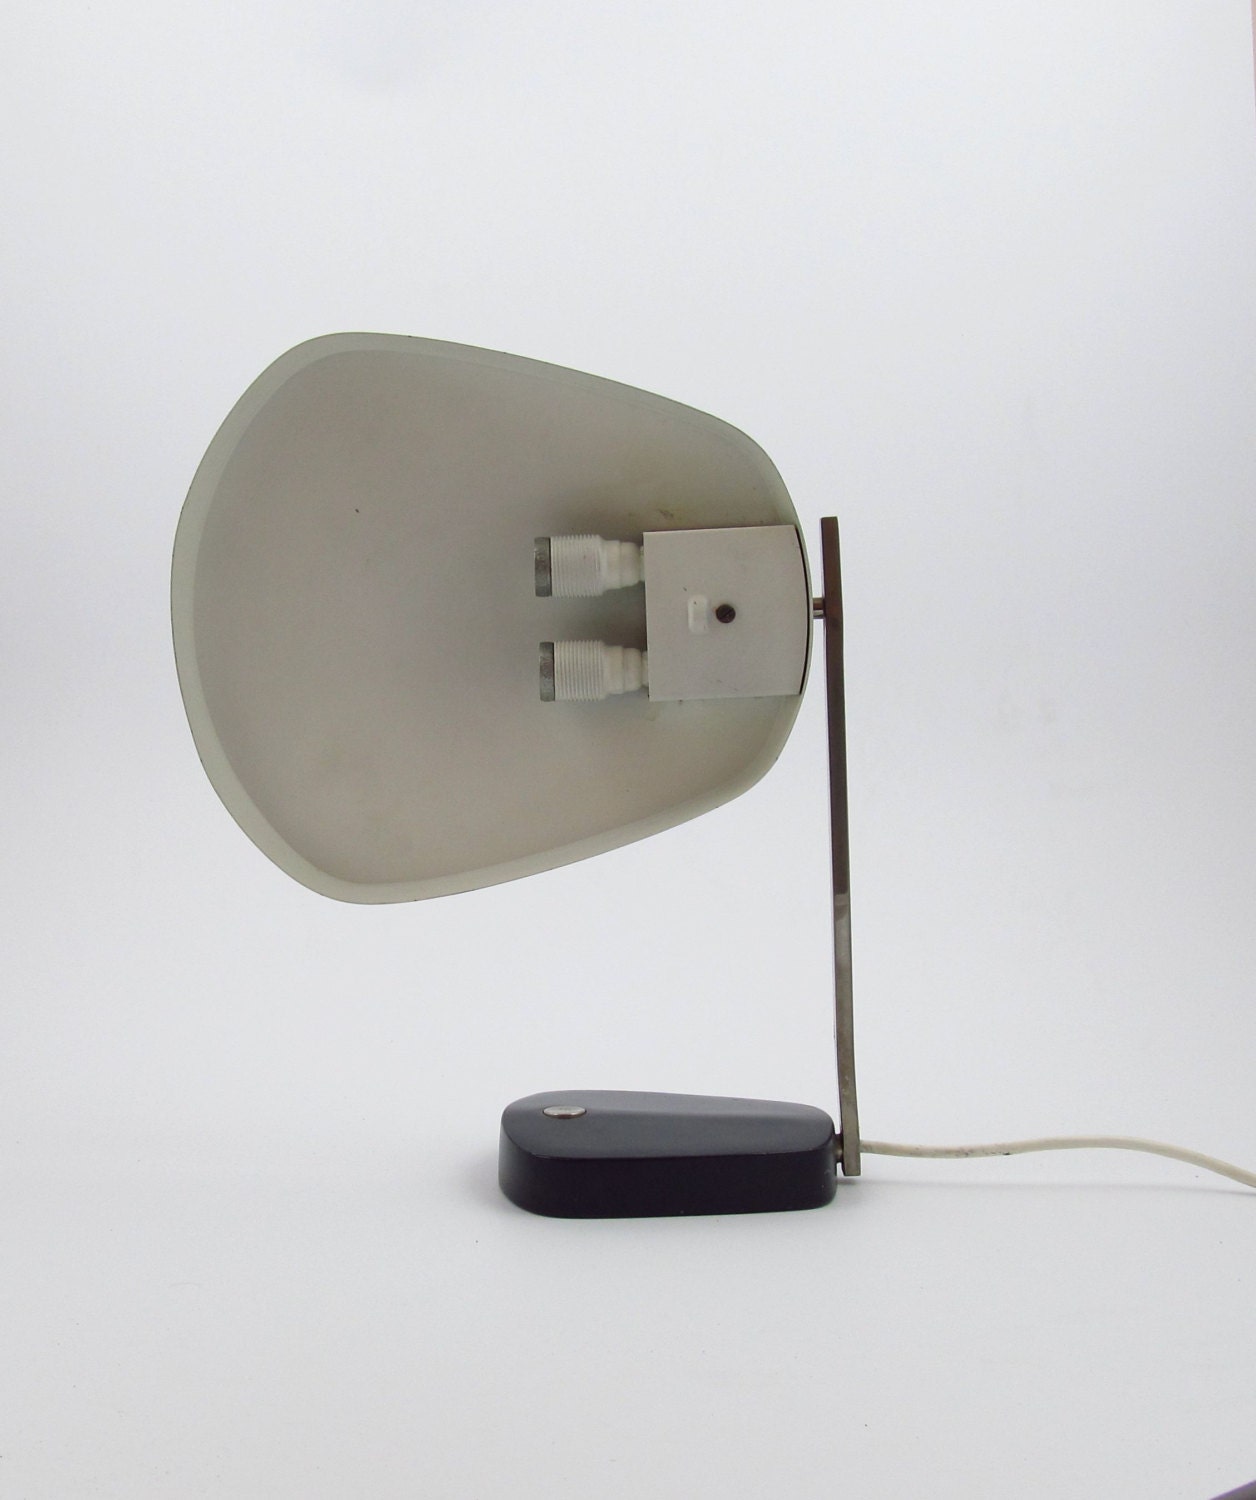 Hillebrand leuchten tafellamp Oslo ontworpen door Heinz Pfaender 1962.